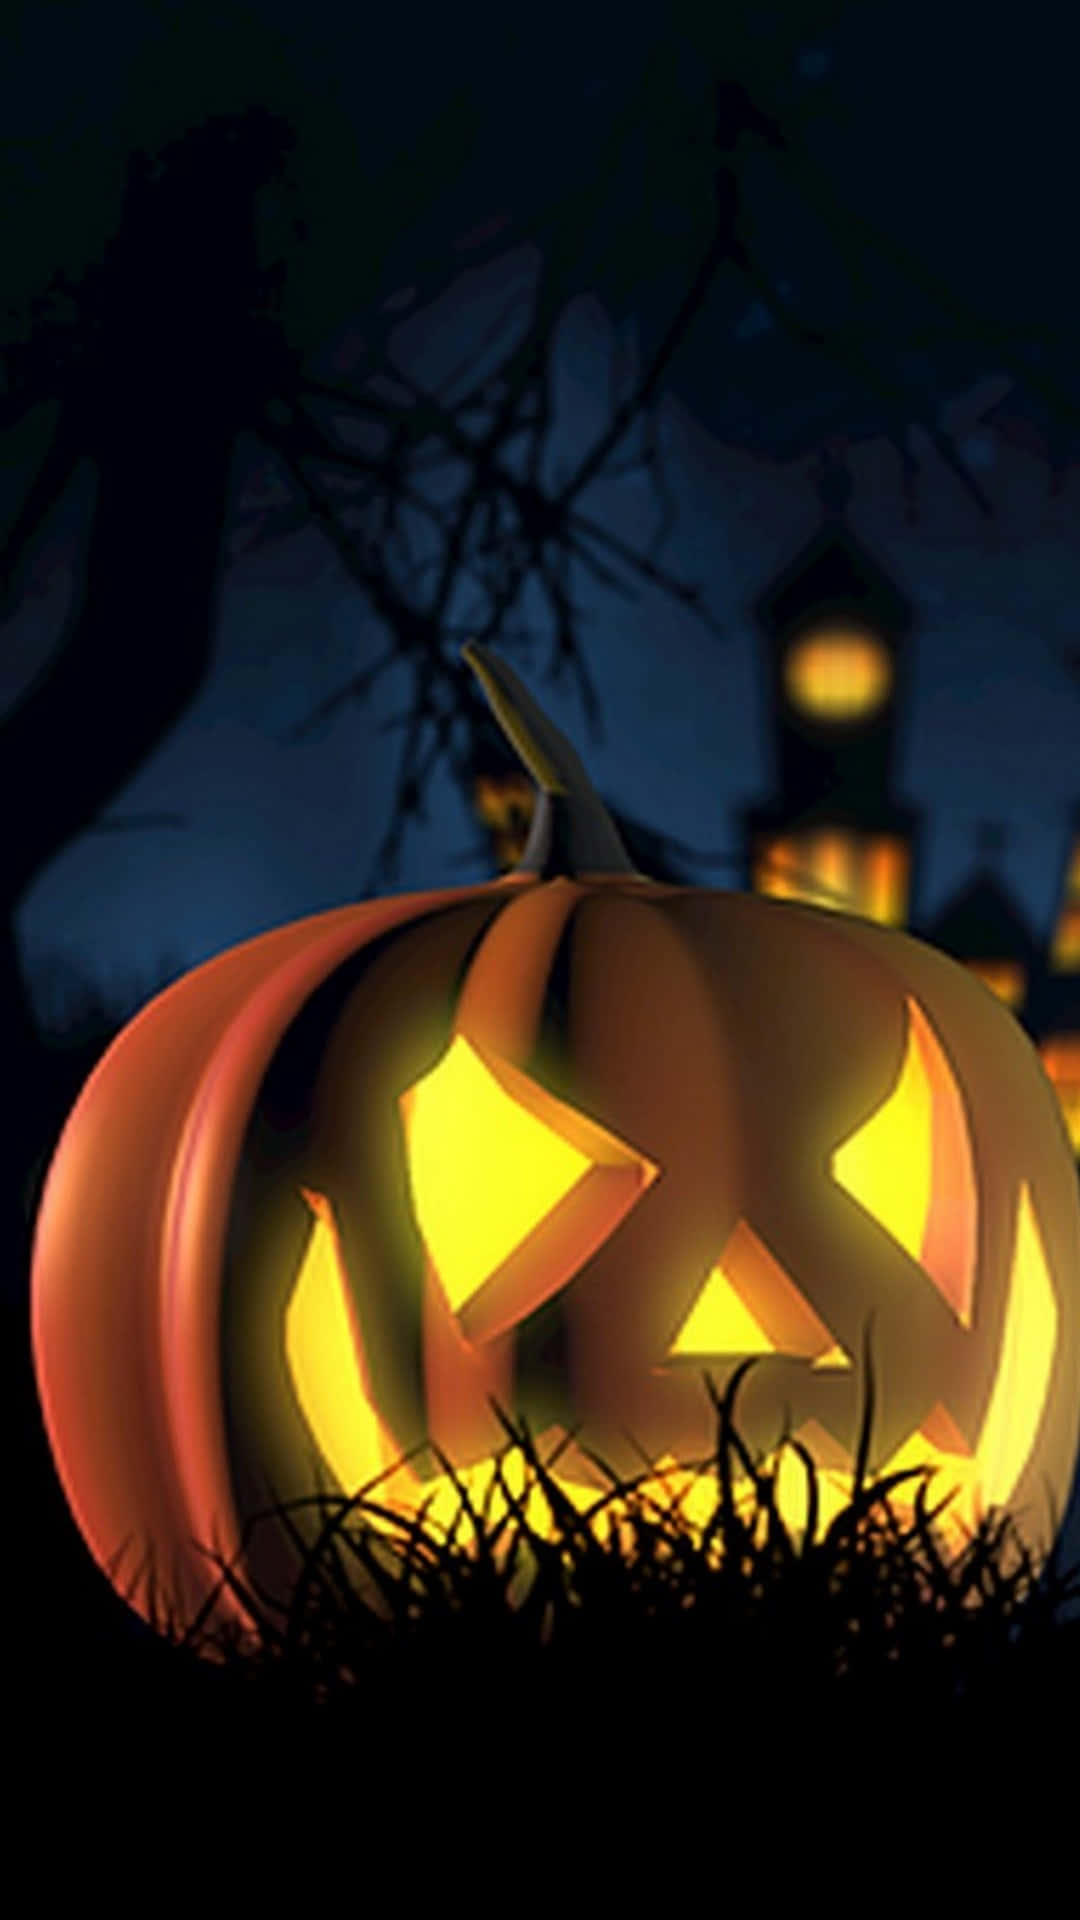 Fondoschermo Di Halloween Per Iphone Con Jack O' Lantern Brillante.